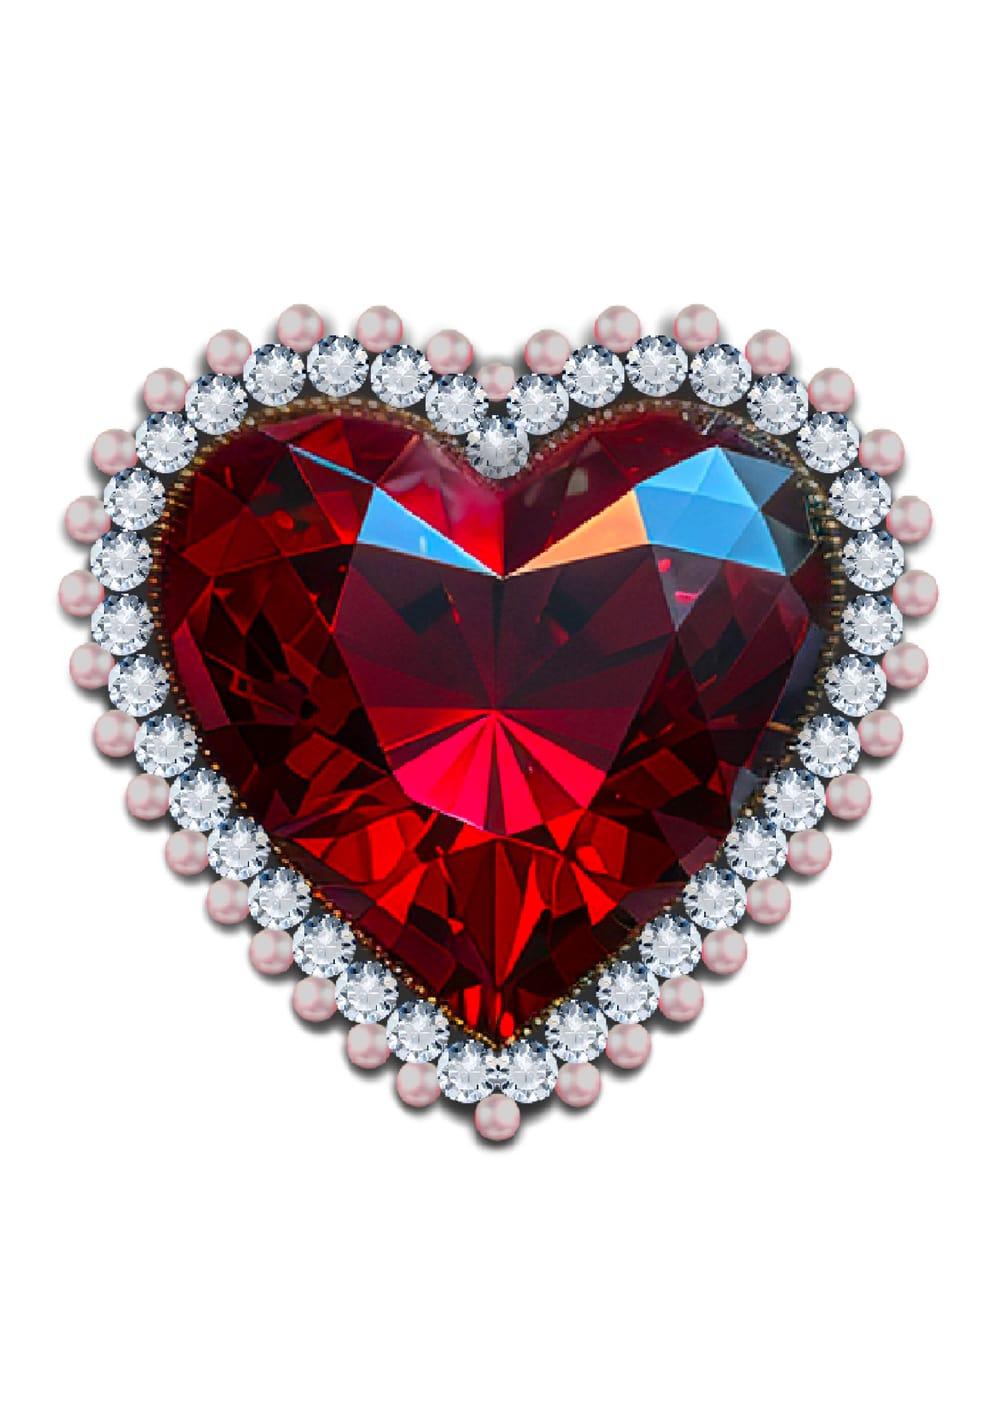 Jewel encrusted Ruby heart 